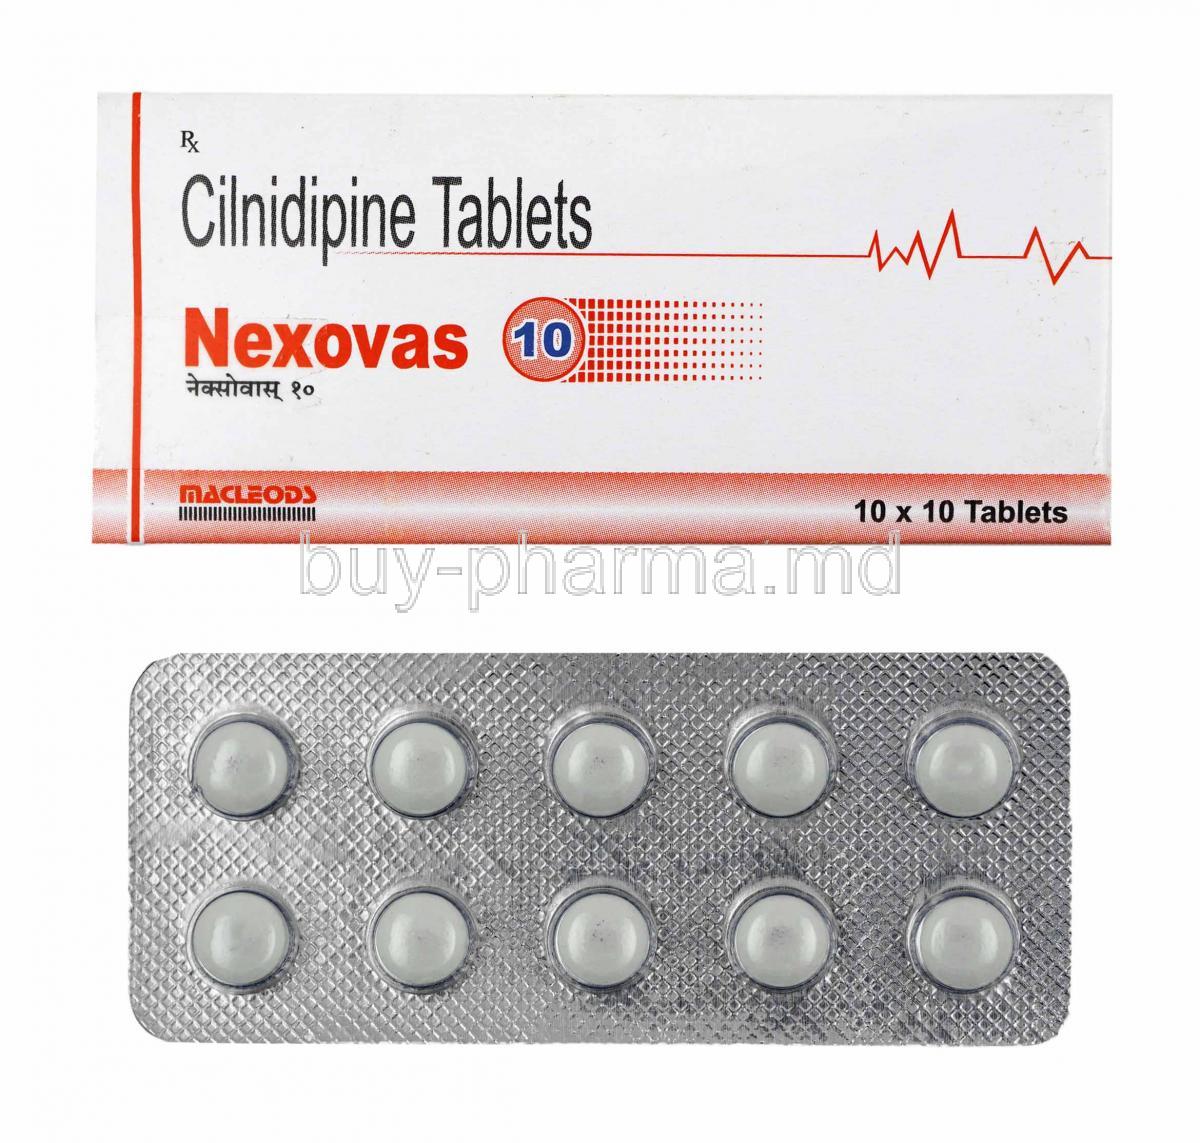 Nexovas, Cilnidipine 10mg box and tablets